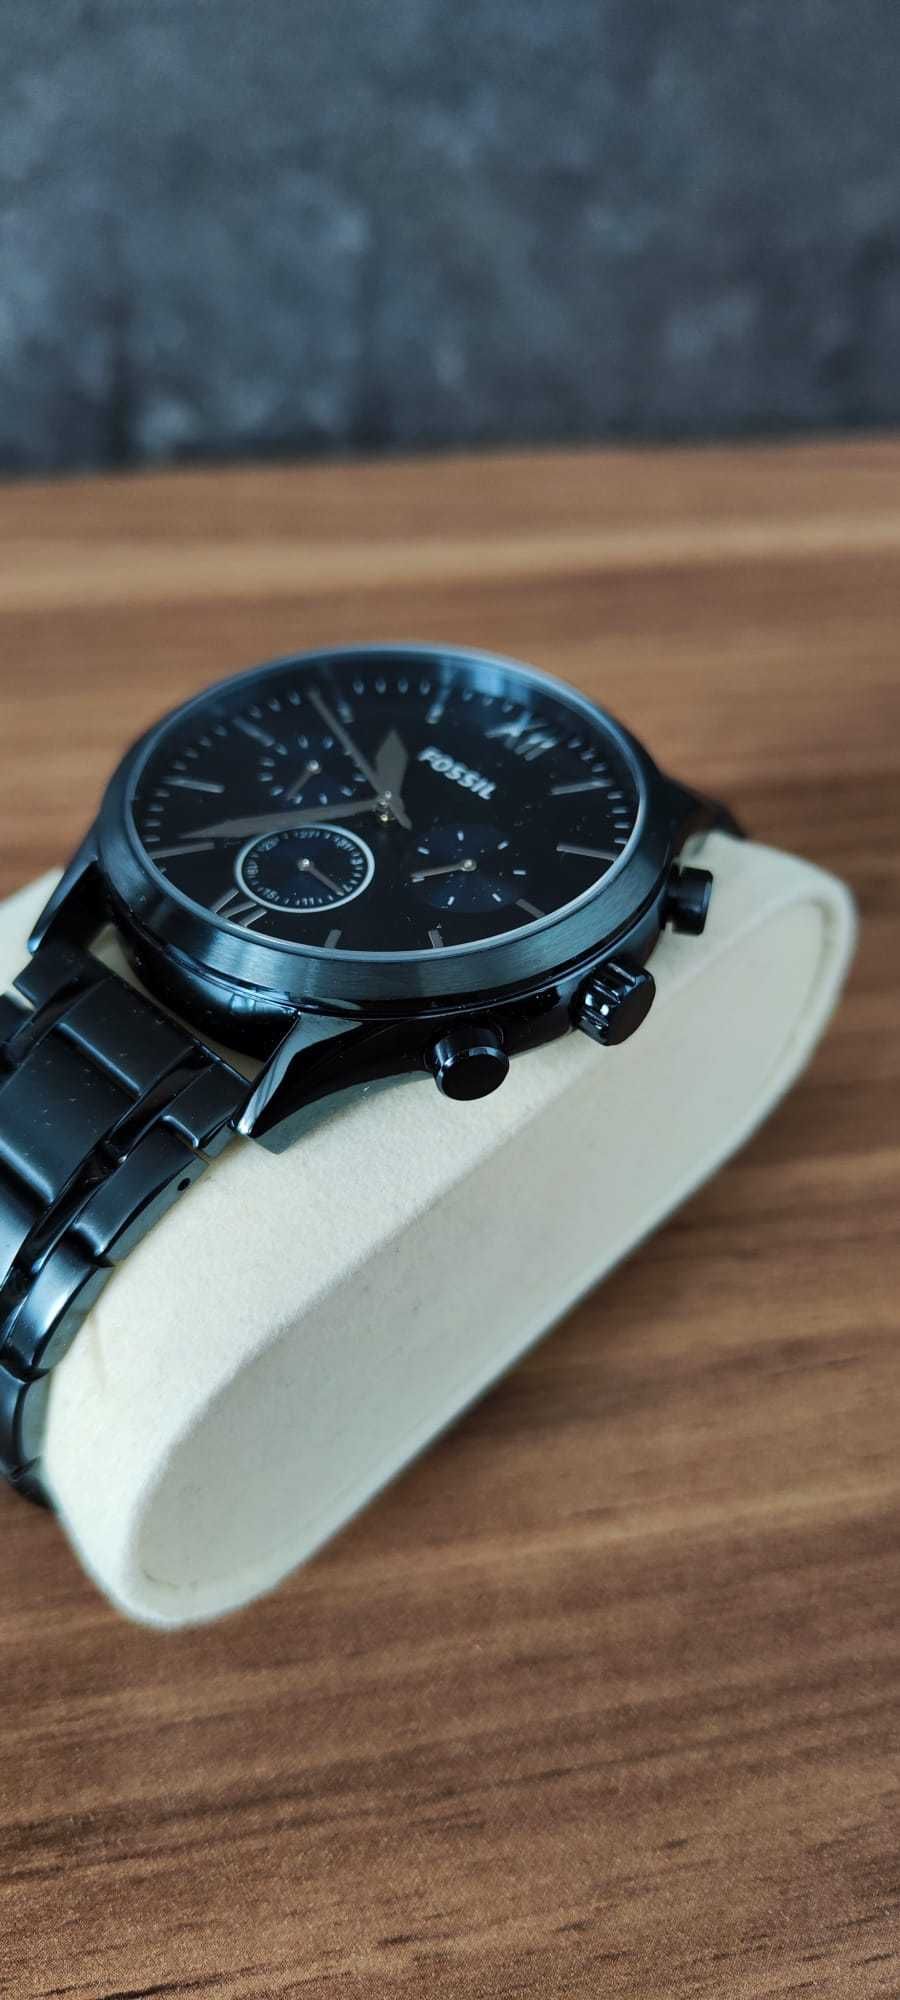 Fossil BQ2403 męski zegarek w jak nowy bransoleta elegancki